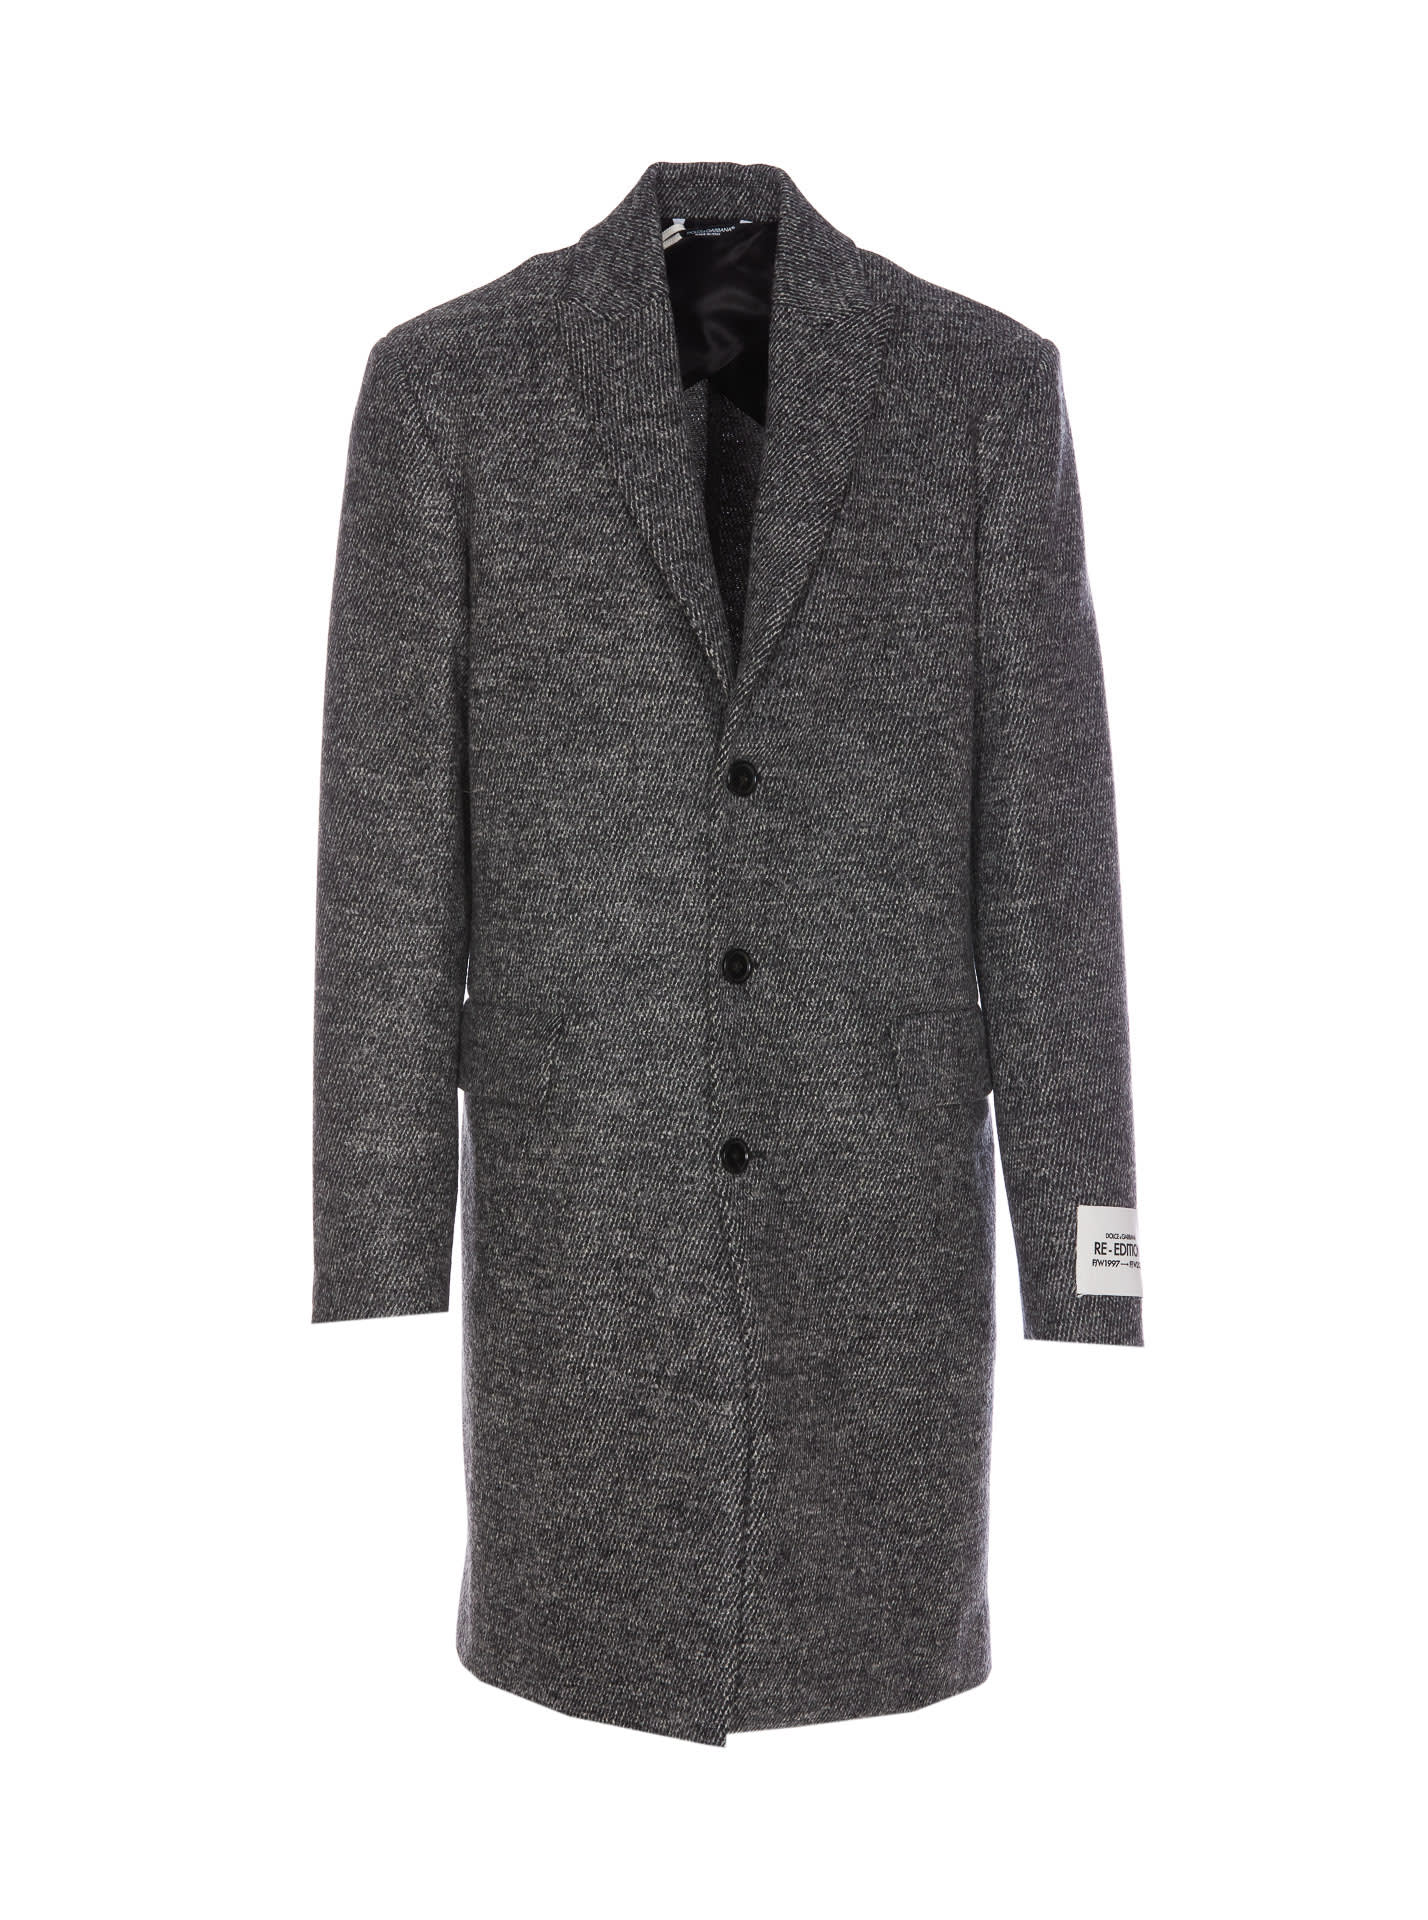 Dolce & Gabbana Coat In Gray